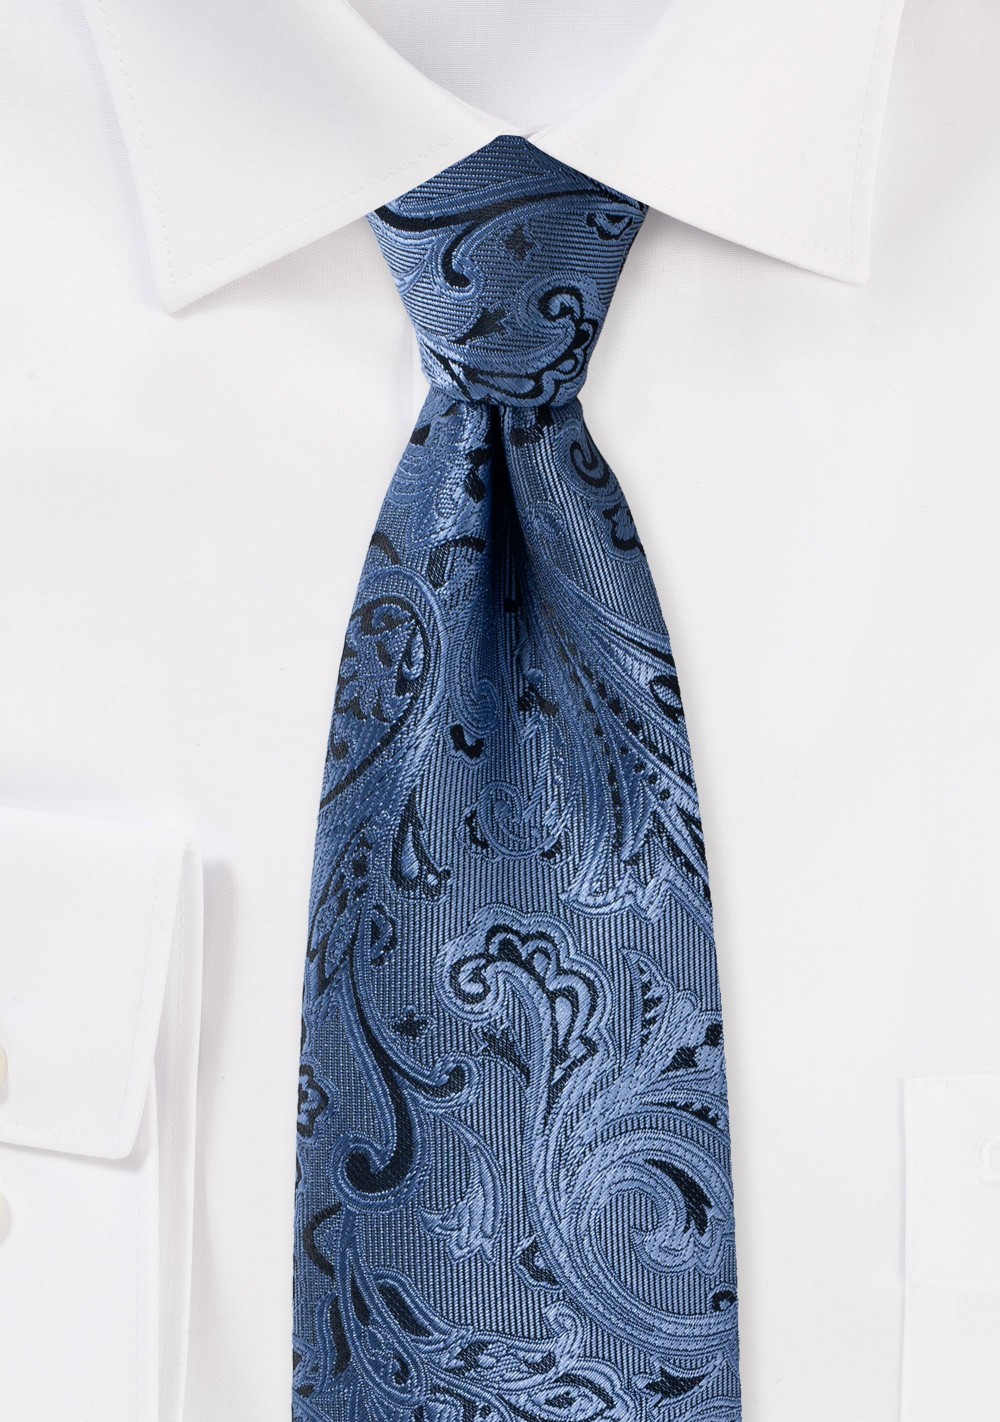 Steel Blue Paisley Tie in XXL